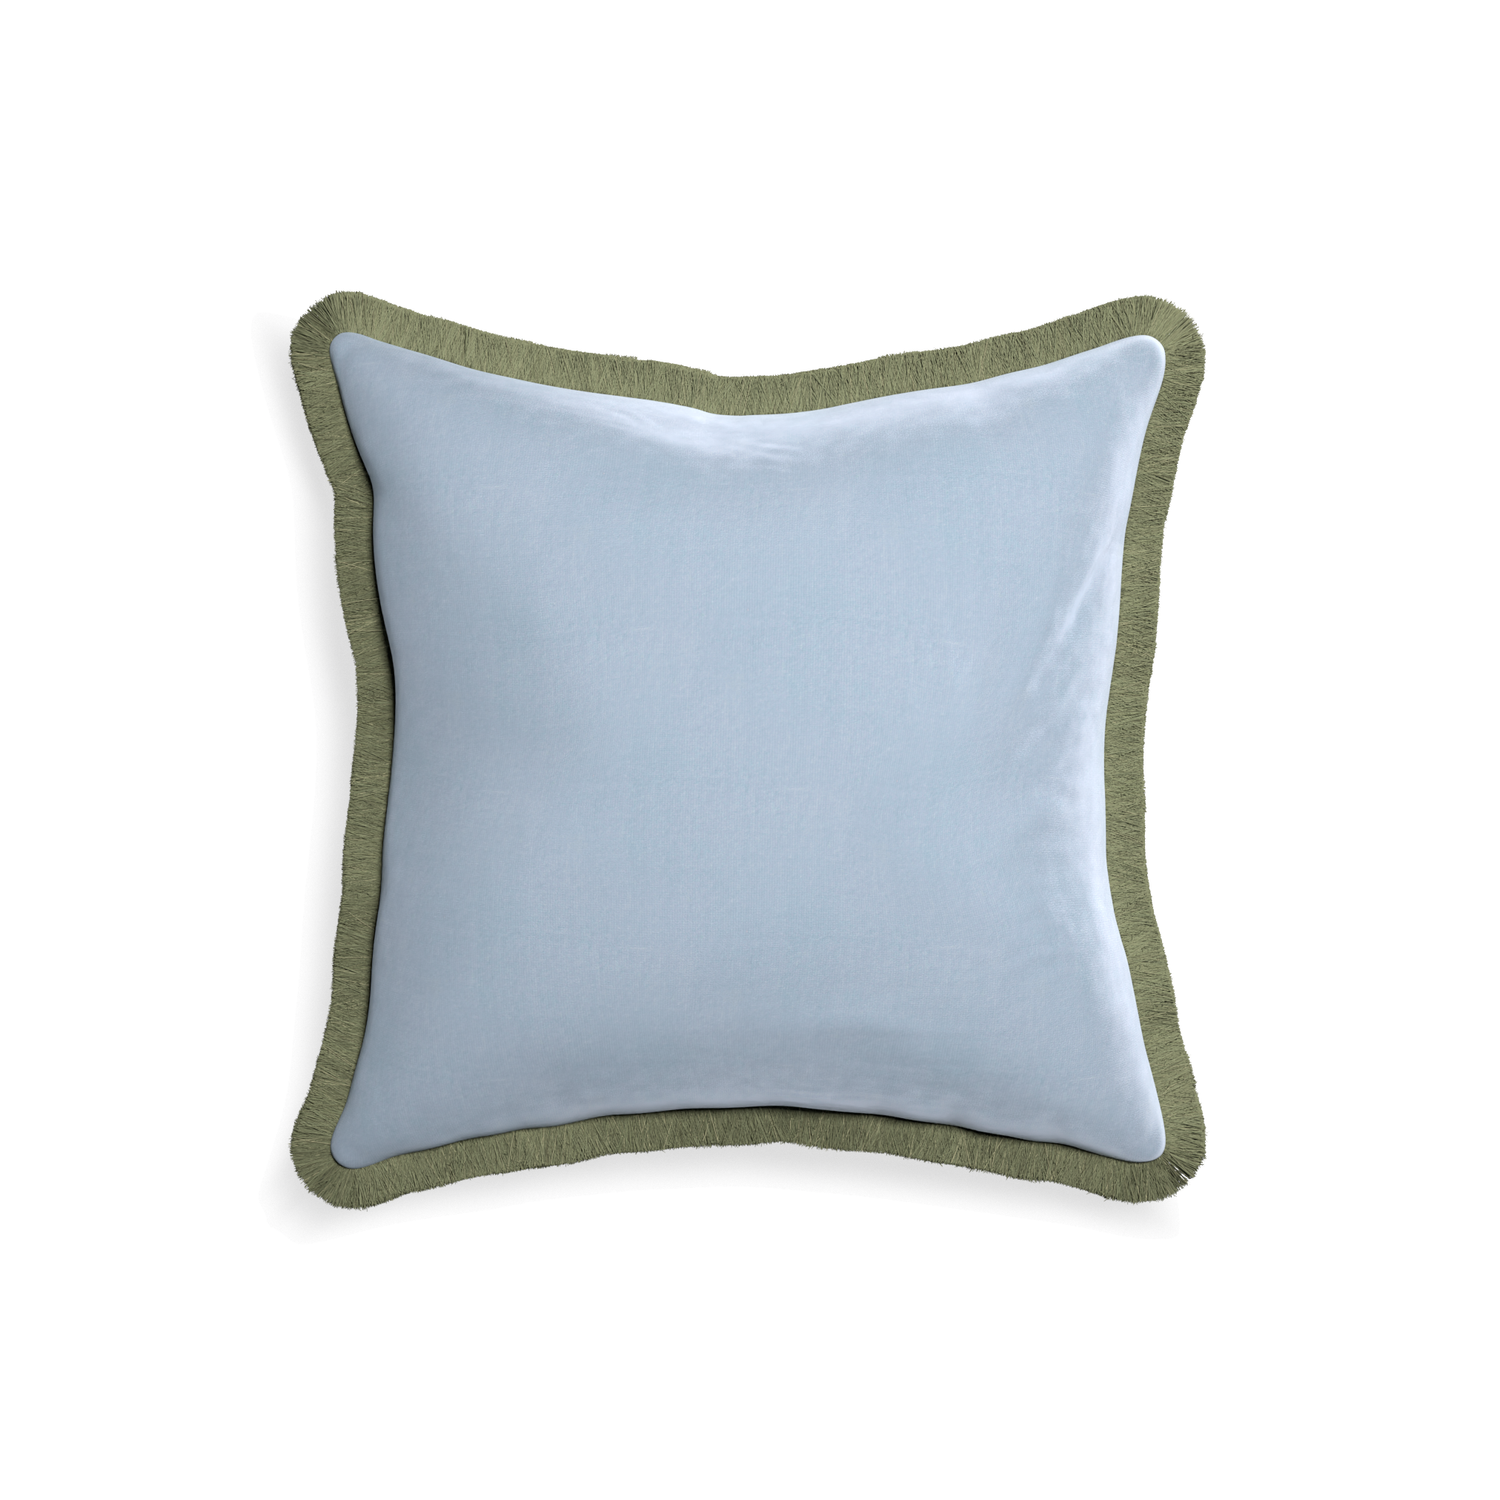 18-square sky velvet custom pillow with sage fringe on white background